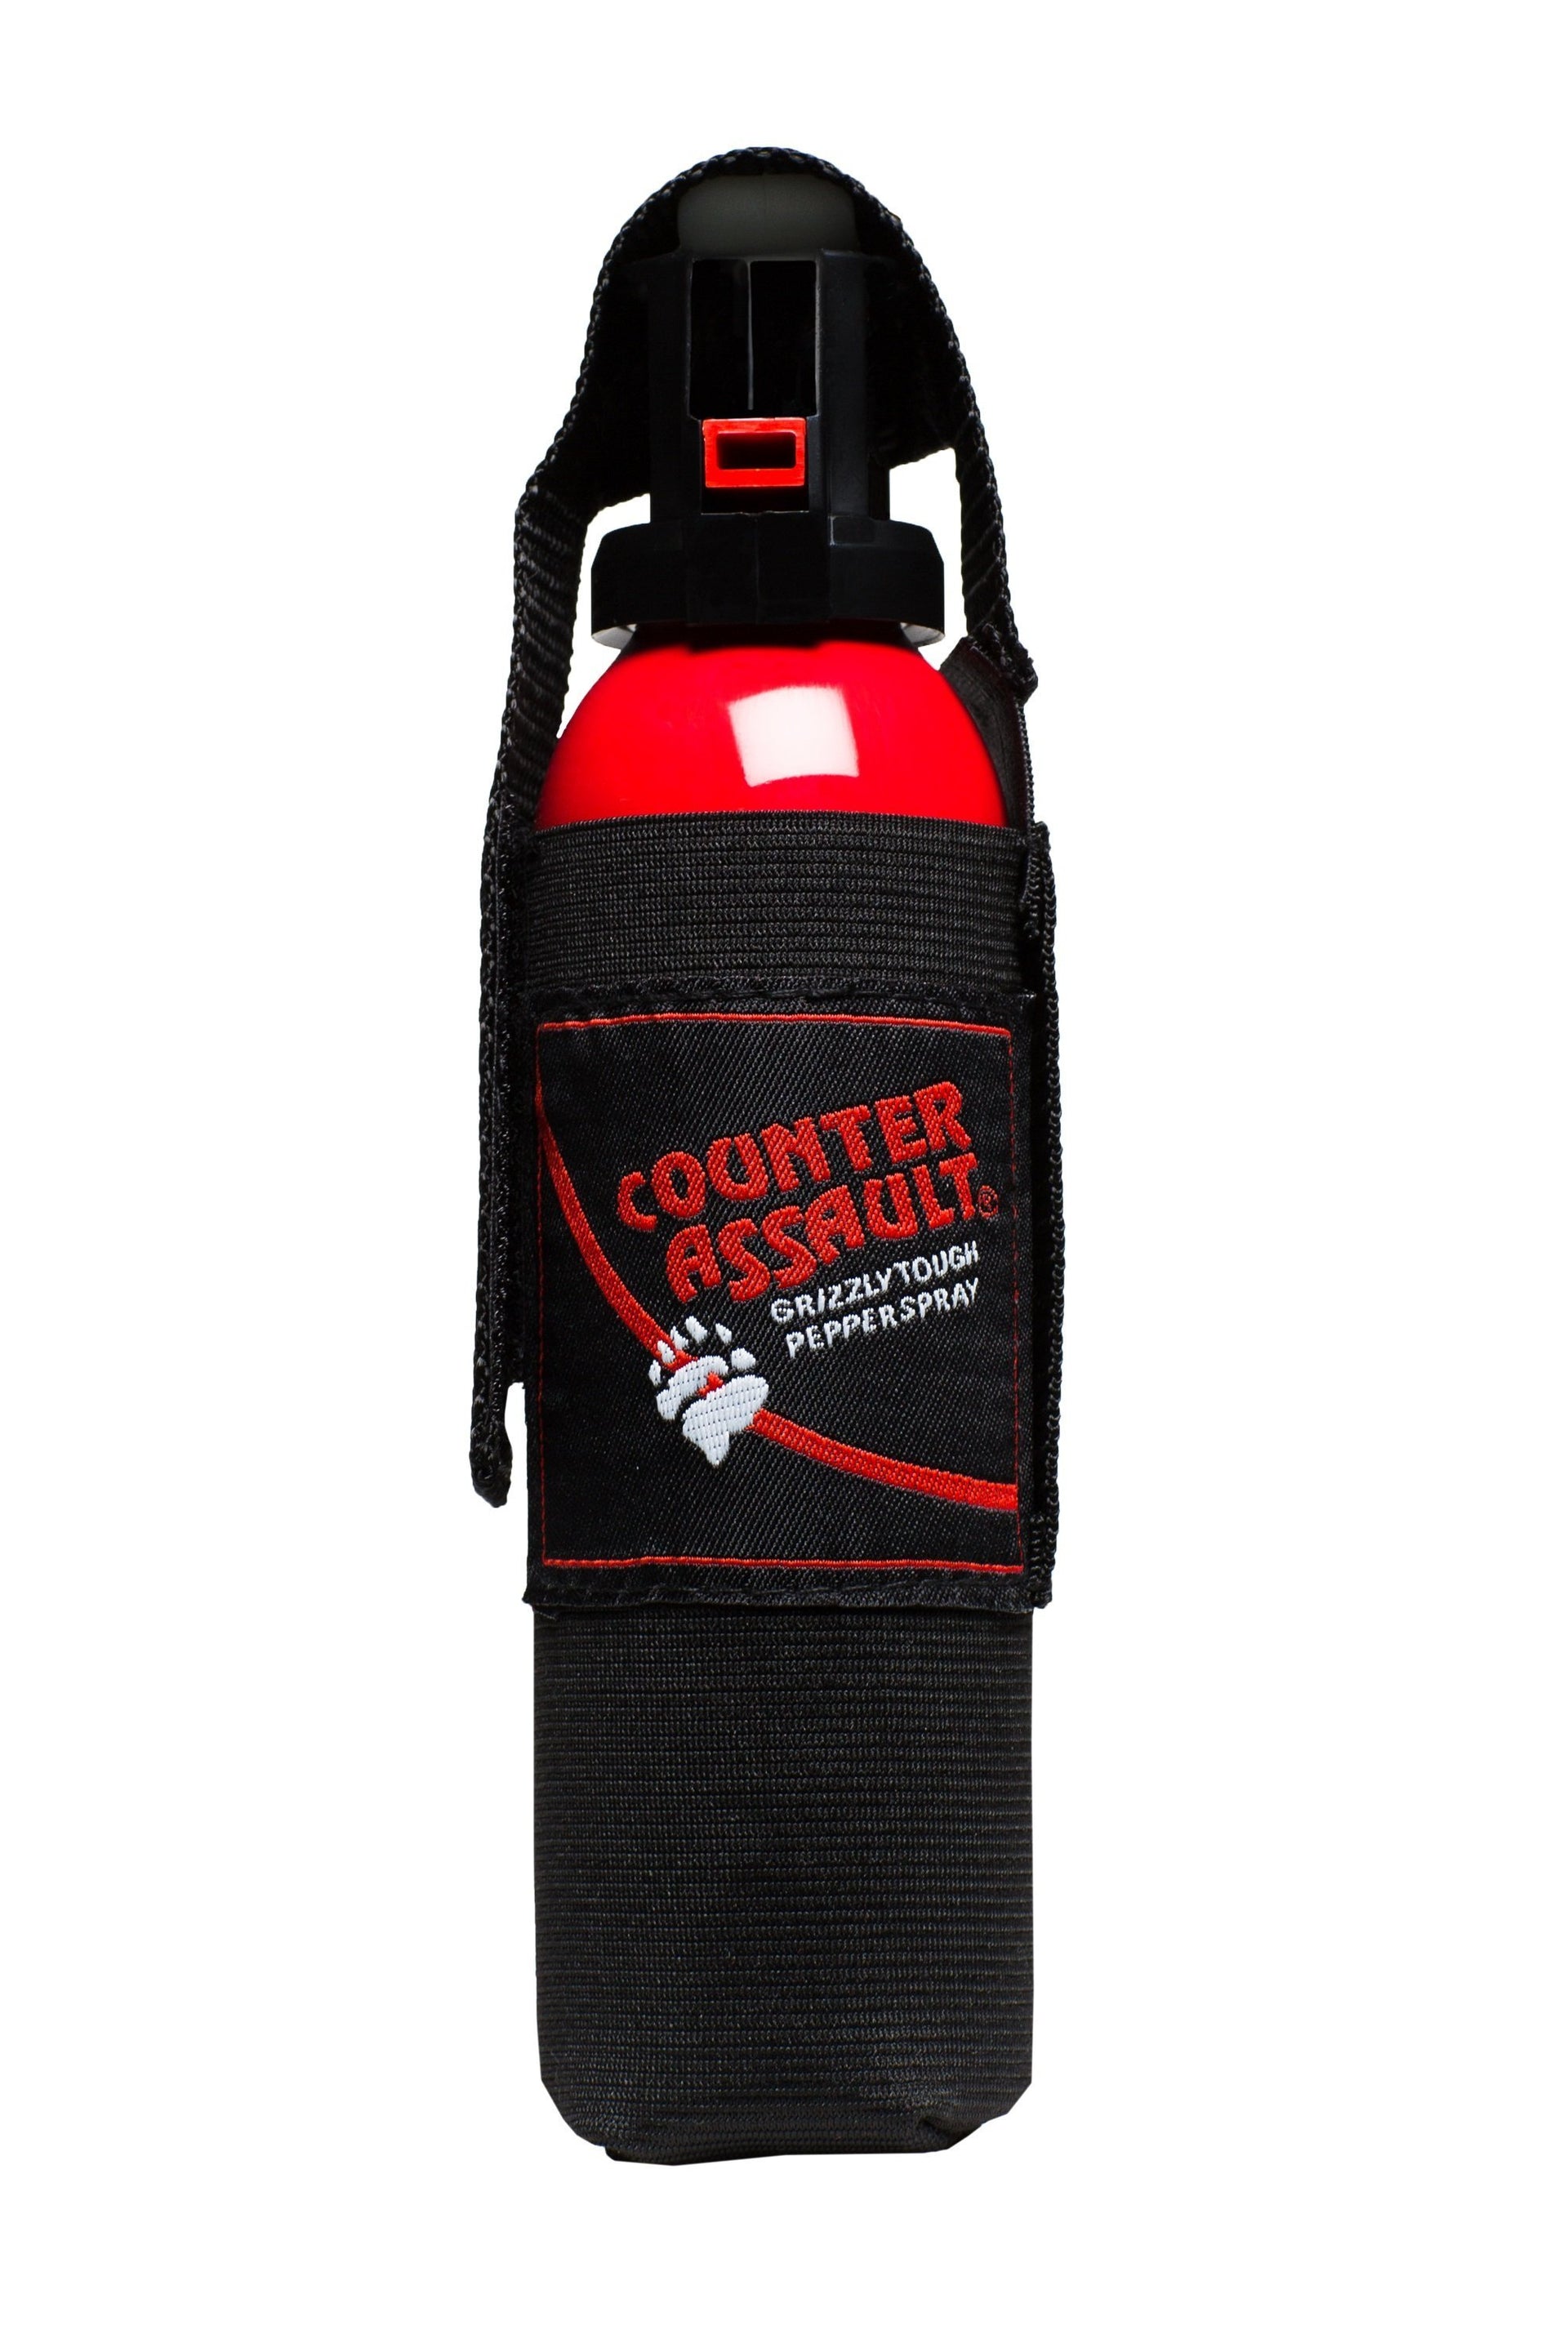 10.2 oz Counter Assault Bear Deterrent with Belt Holster - Idaho Mountain Touring